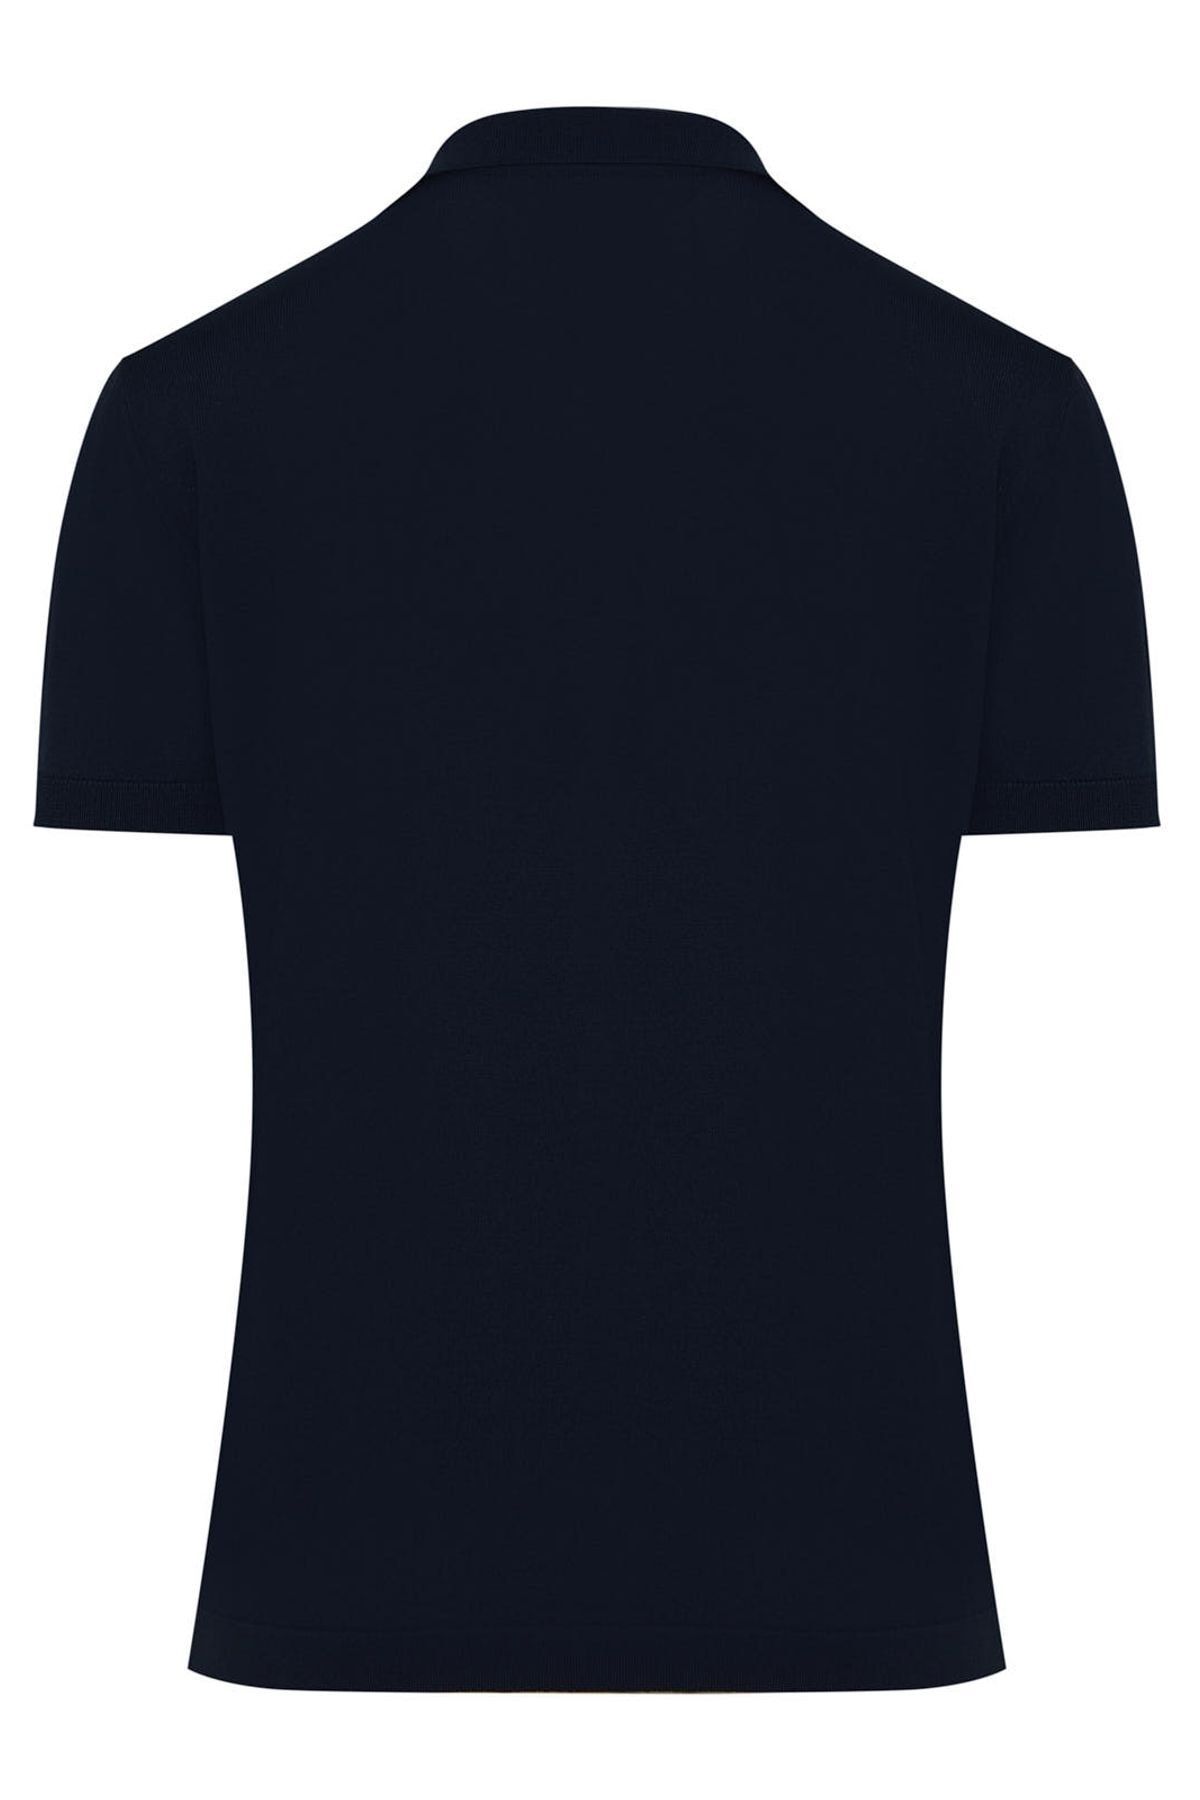 Hatemoğlu تی شرت بافتنی یقه ابریشمی چوگان ساده به رنگ آبی معمولی